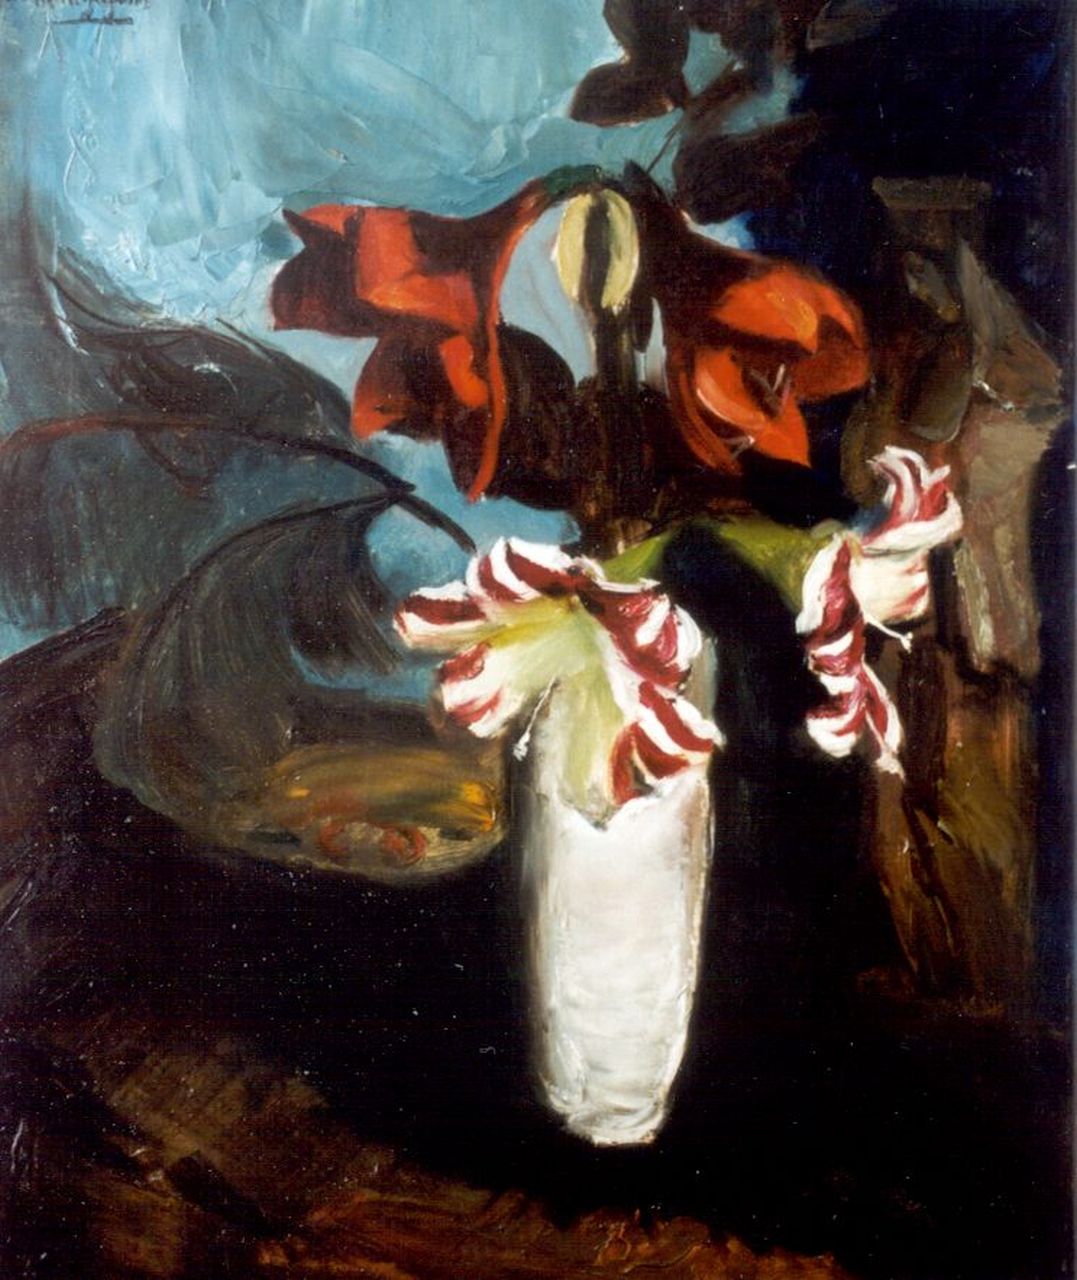 Wijngaerdt P.T. van | Petrus Theodorus 'Piet' van Wijngaerdt, Amaryllis in witte vaas, olieverf op doek 80,2 x 68,0 cm, gesigneerd linksboven